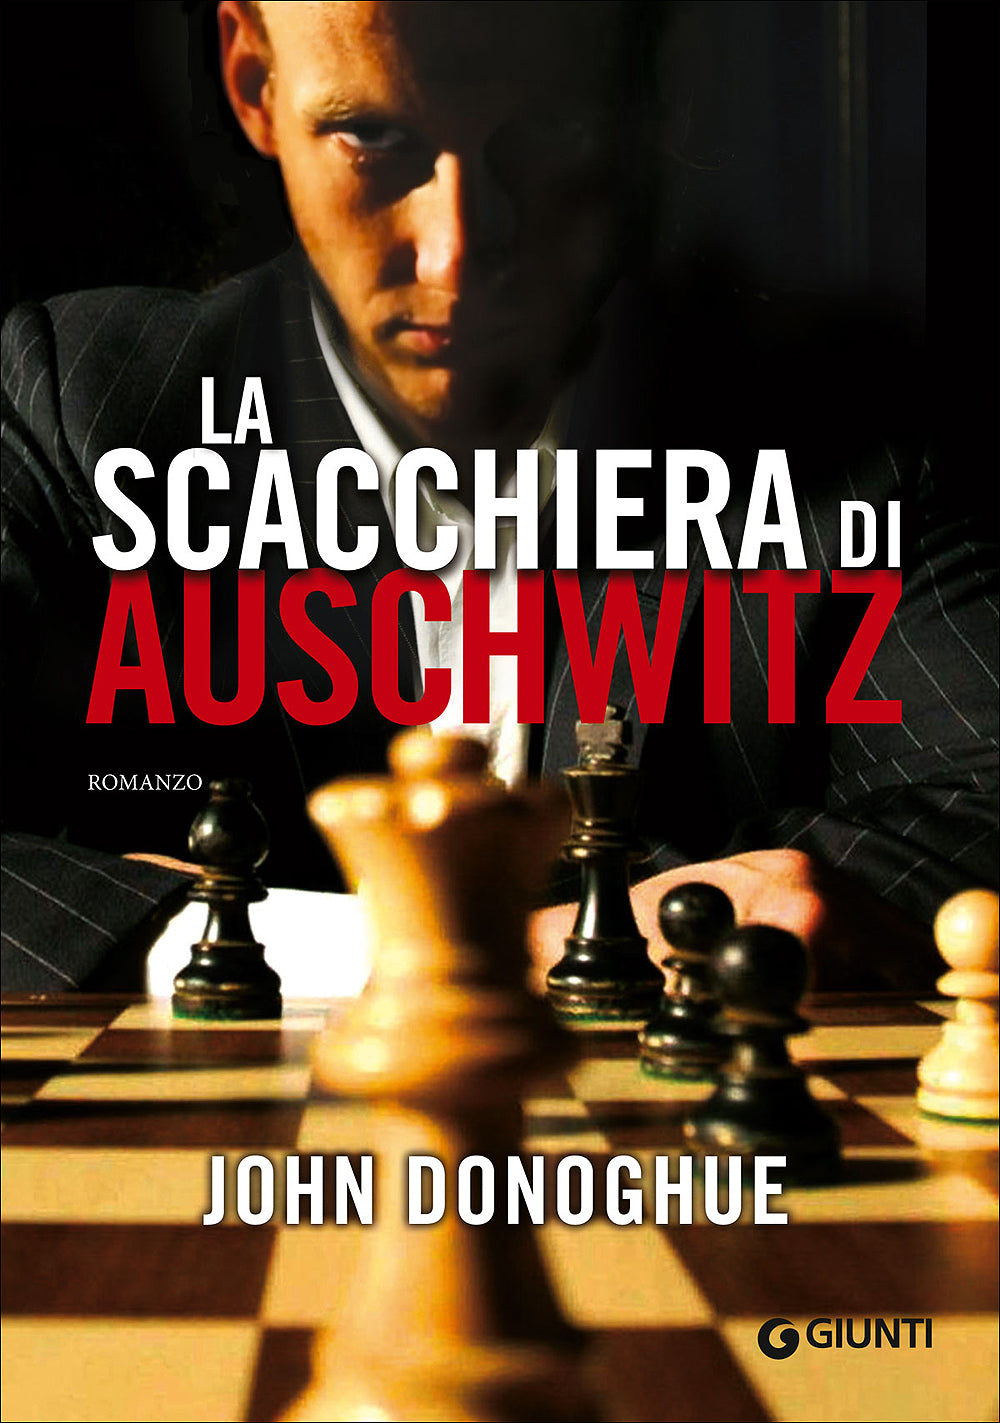 O Clube de Xadrez de Auschwitz, John Donoghue - Livro - Bertrand